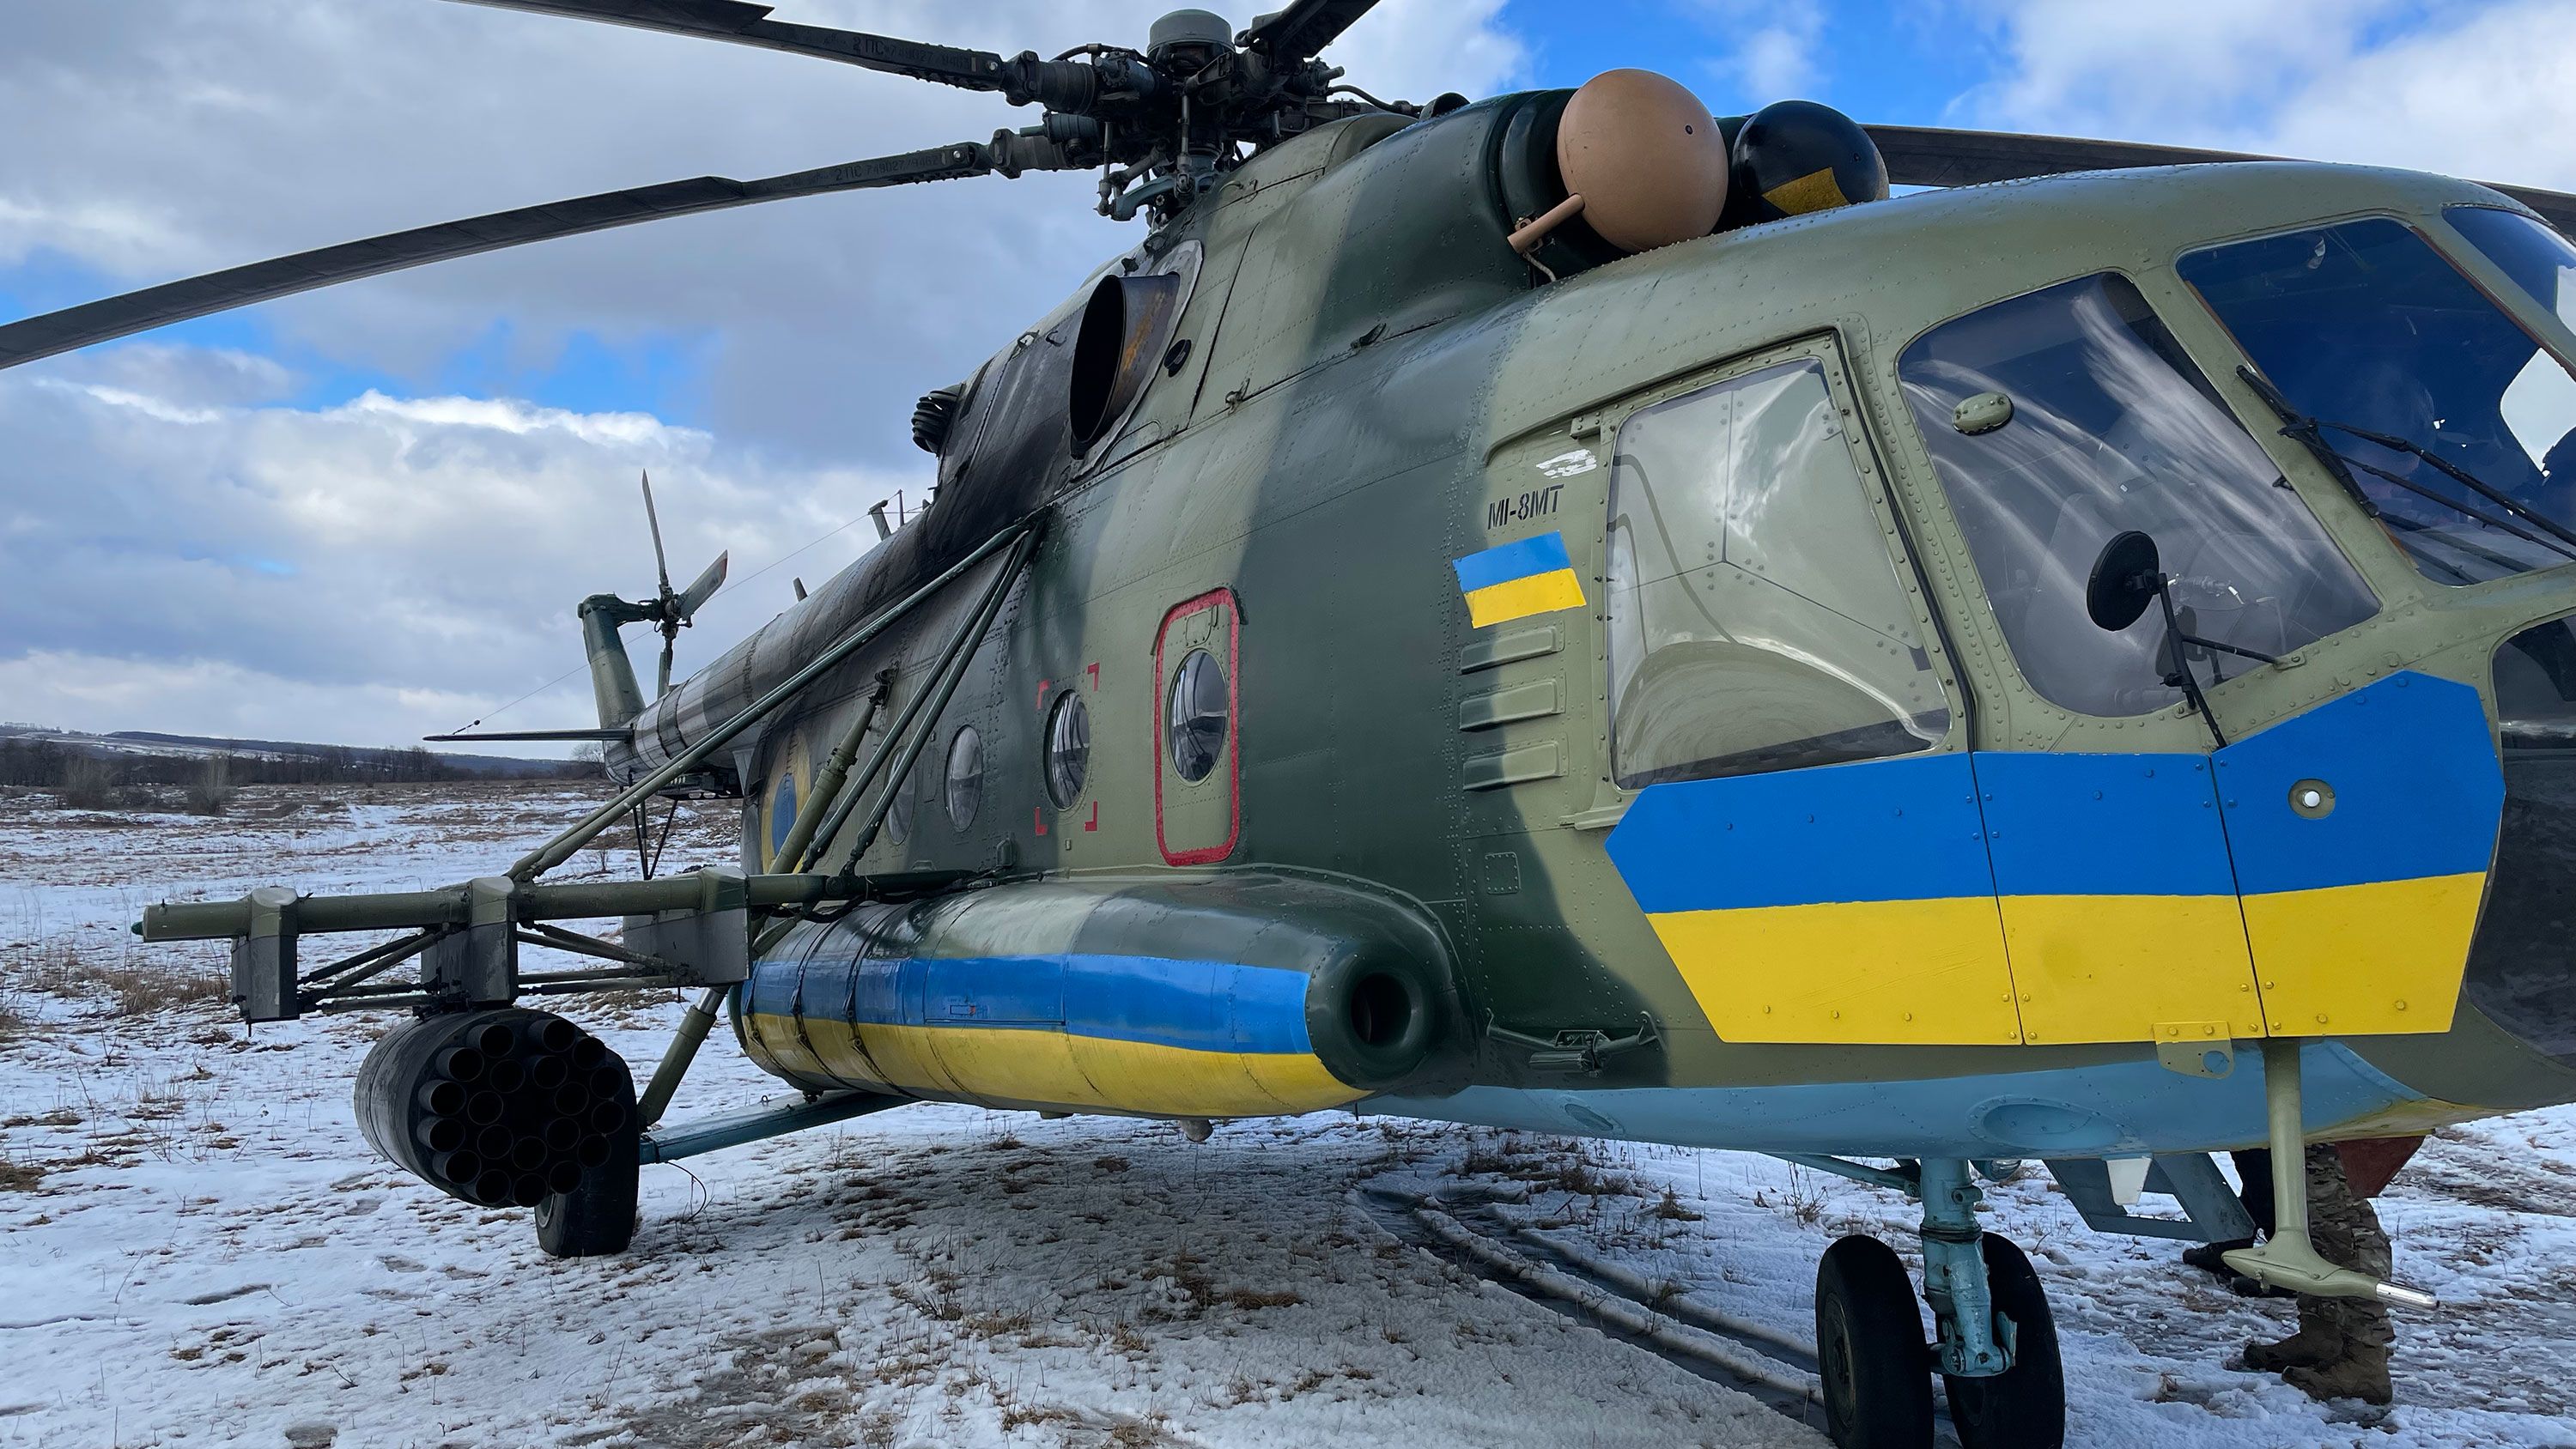 230216141453-07-ukraine-helicopter-intl-cmd.jpg